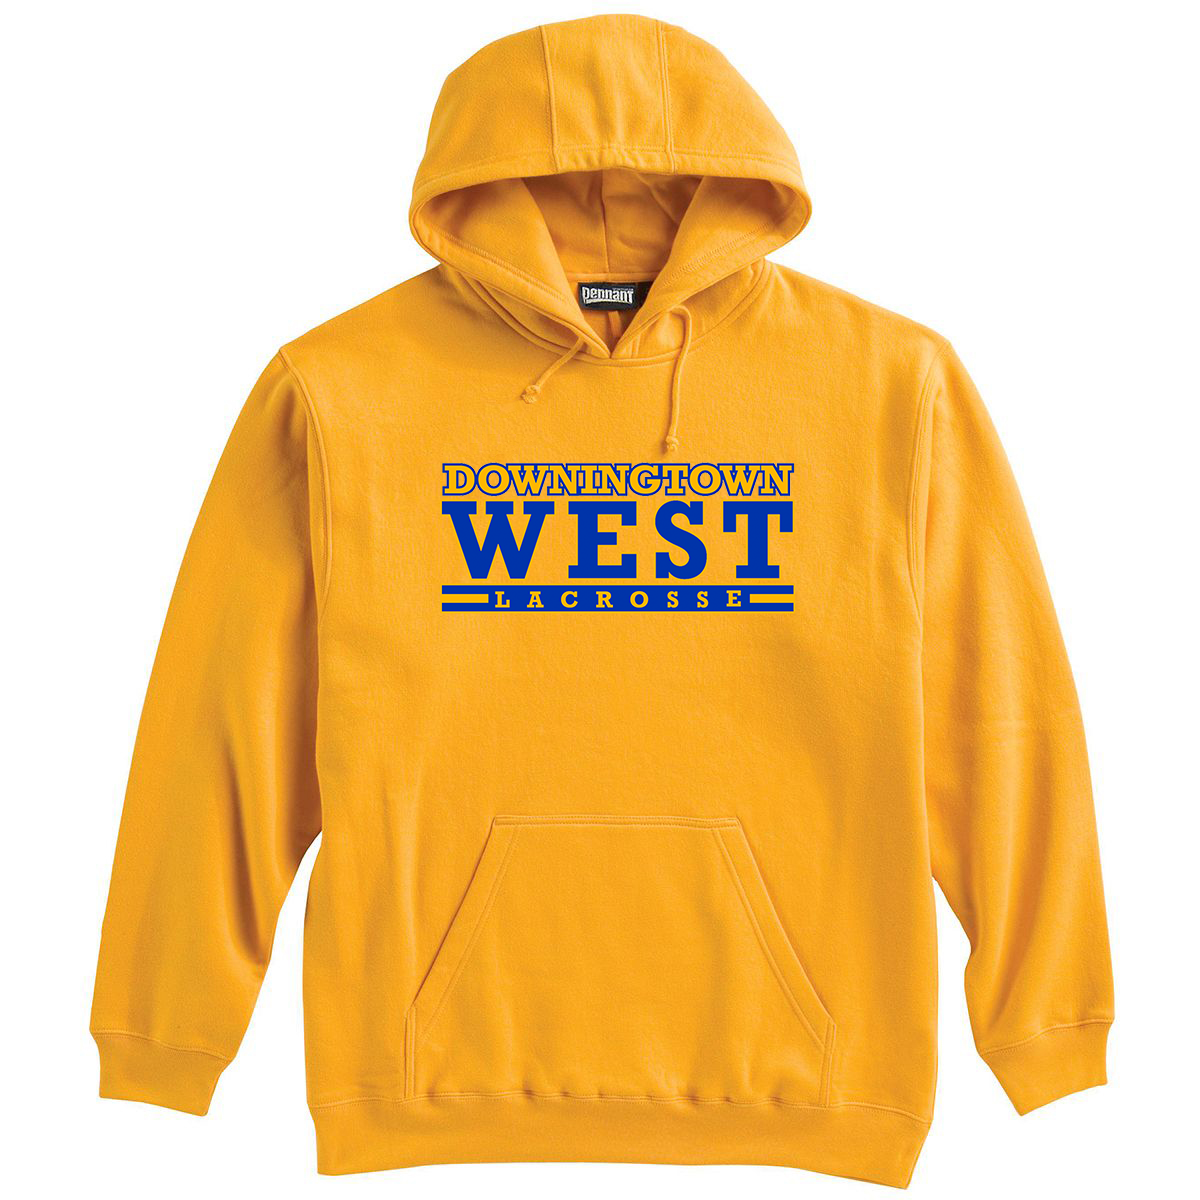 Downingtown West Lacrosse Sweatshirt